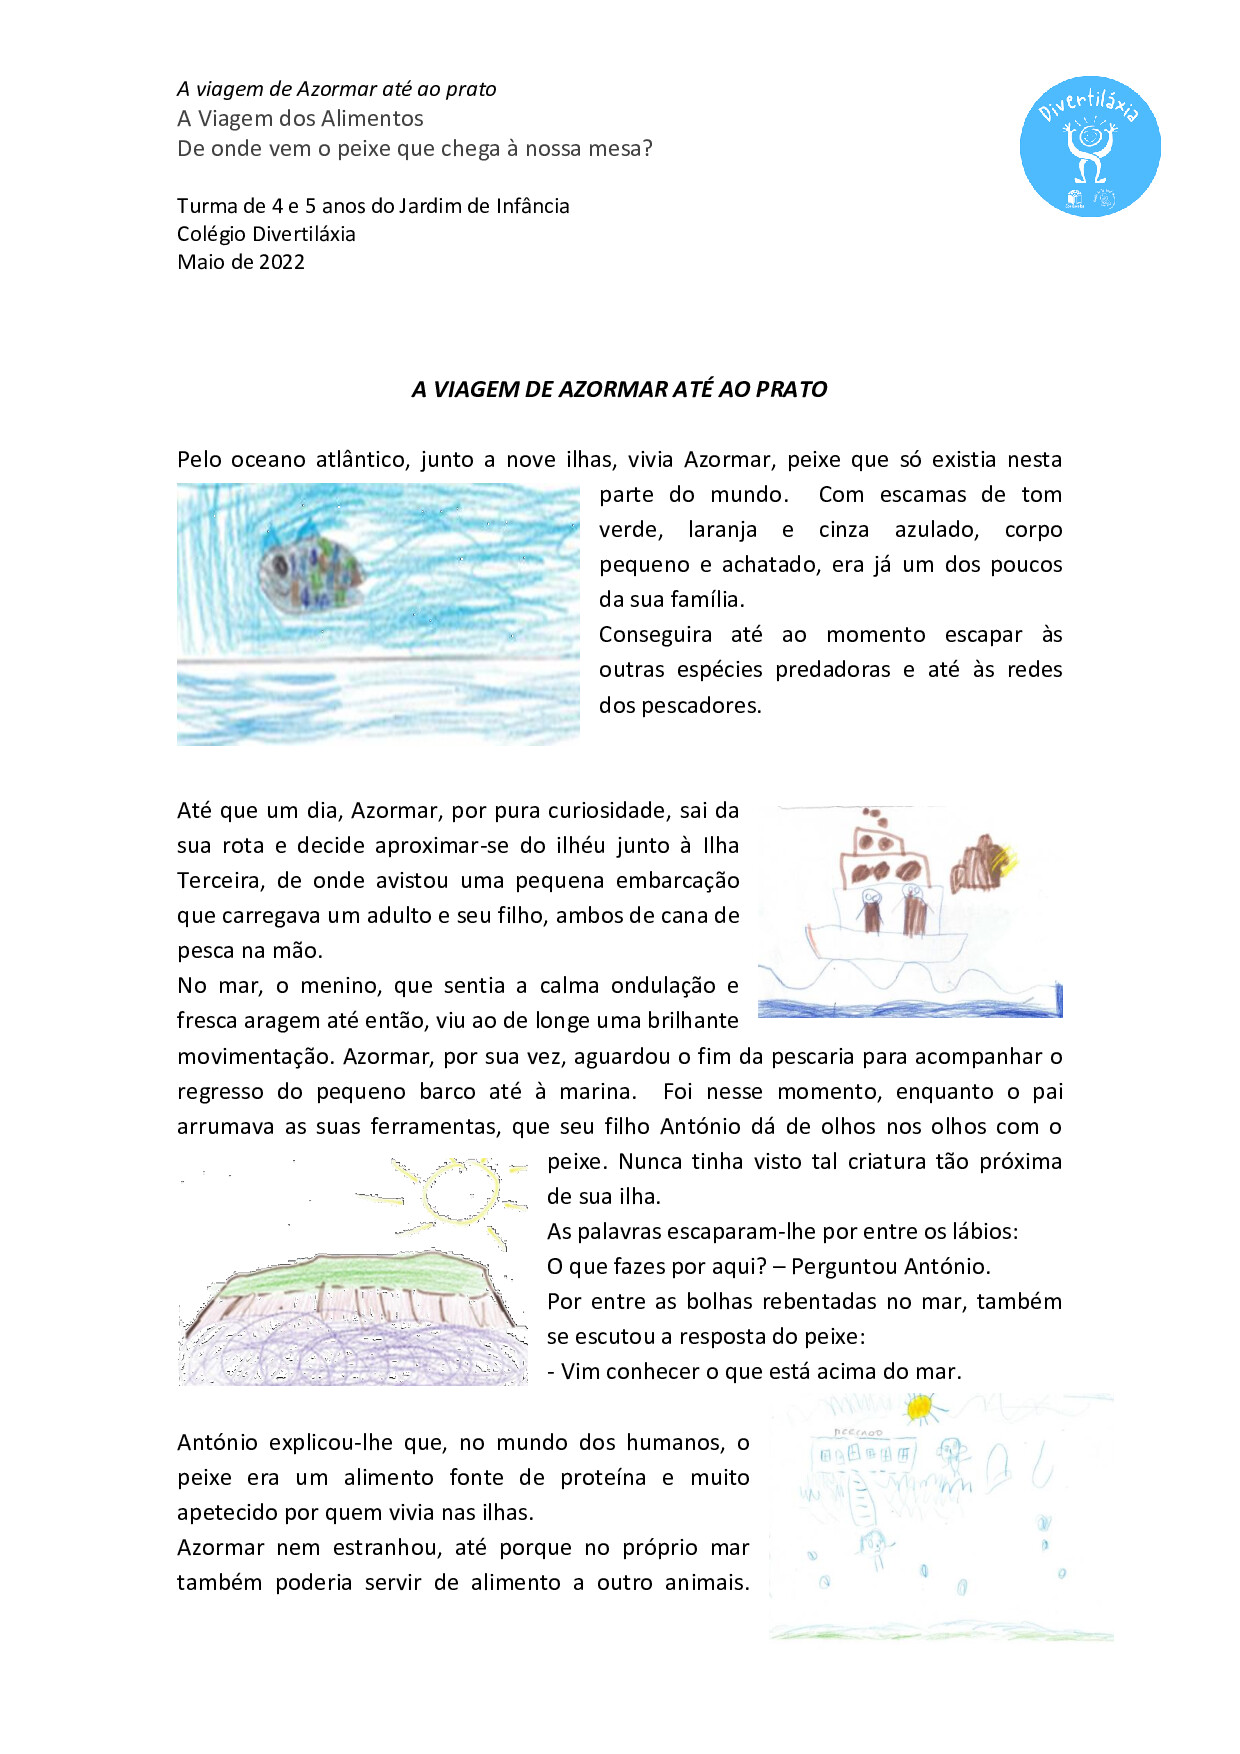 História em pdf com inscrição de desenhos elaborados pelas crianças da turma.